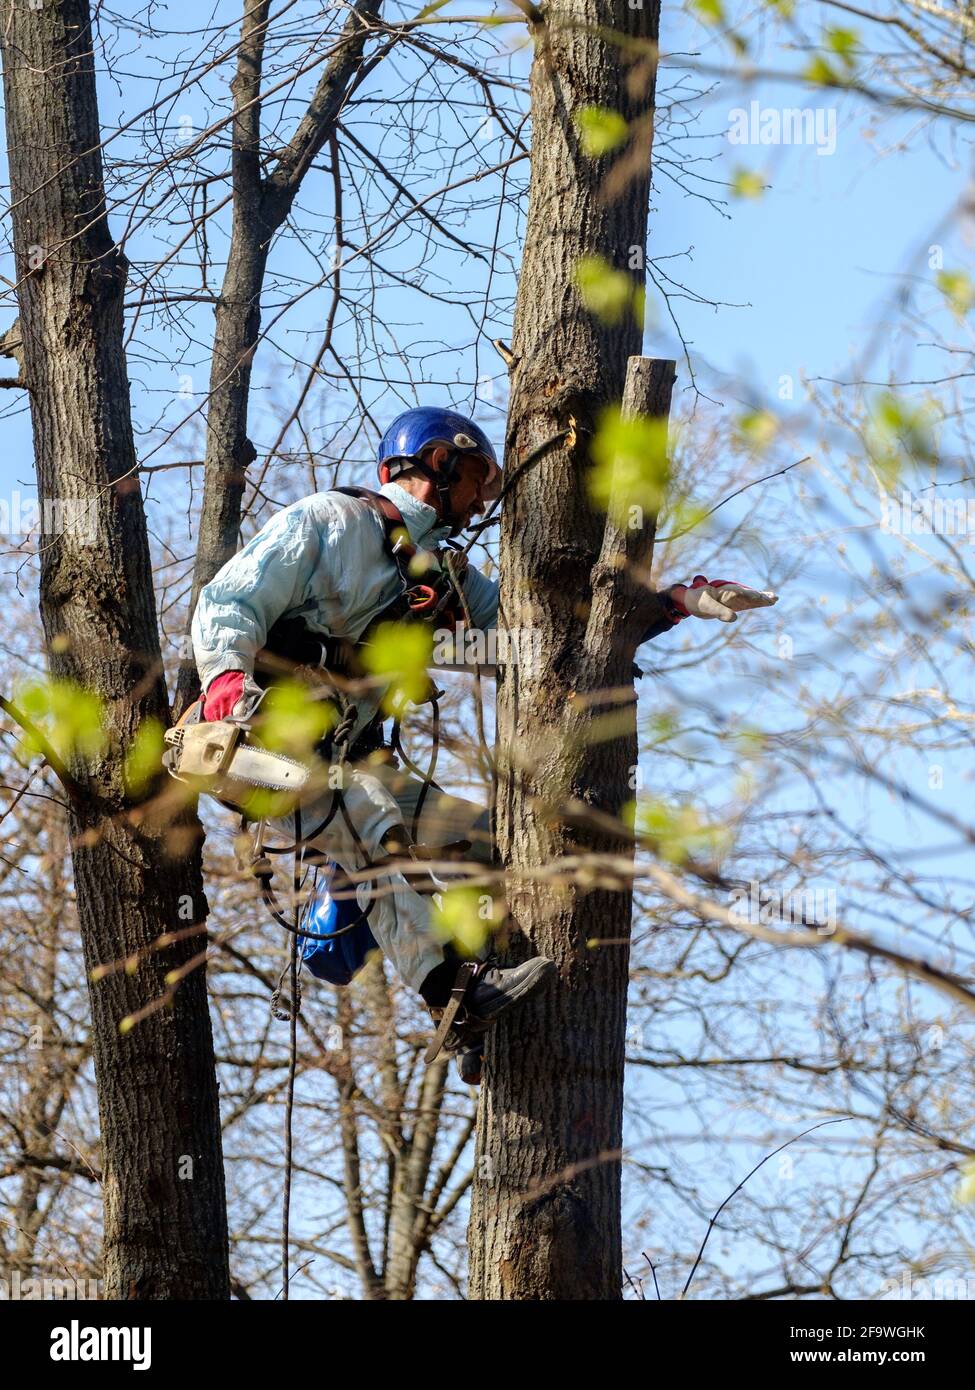 Mosca. Russia. 17 aprile 2021. Un lavoratore in un casco è appeso a corde sulla cima di un albero e taglia un ramo con una motosega. Ringiovanimento di Foto Stock